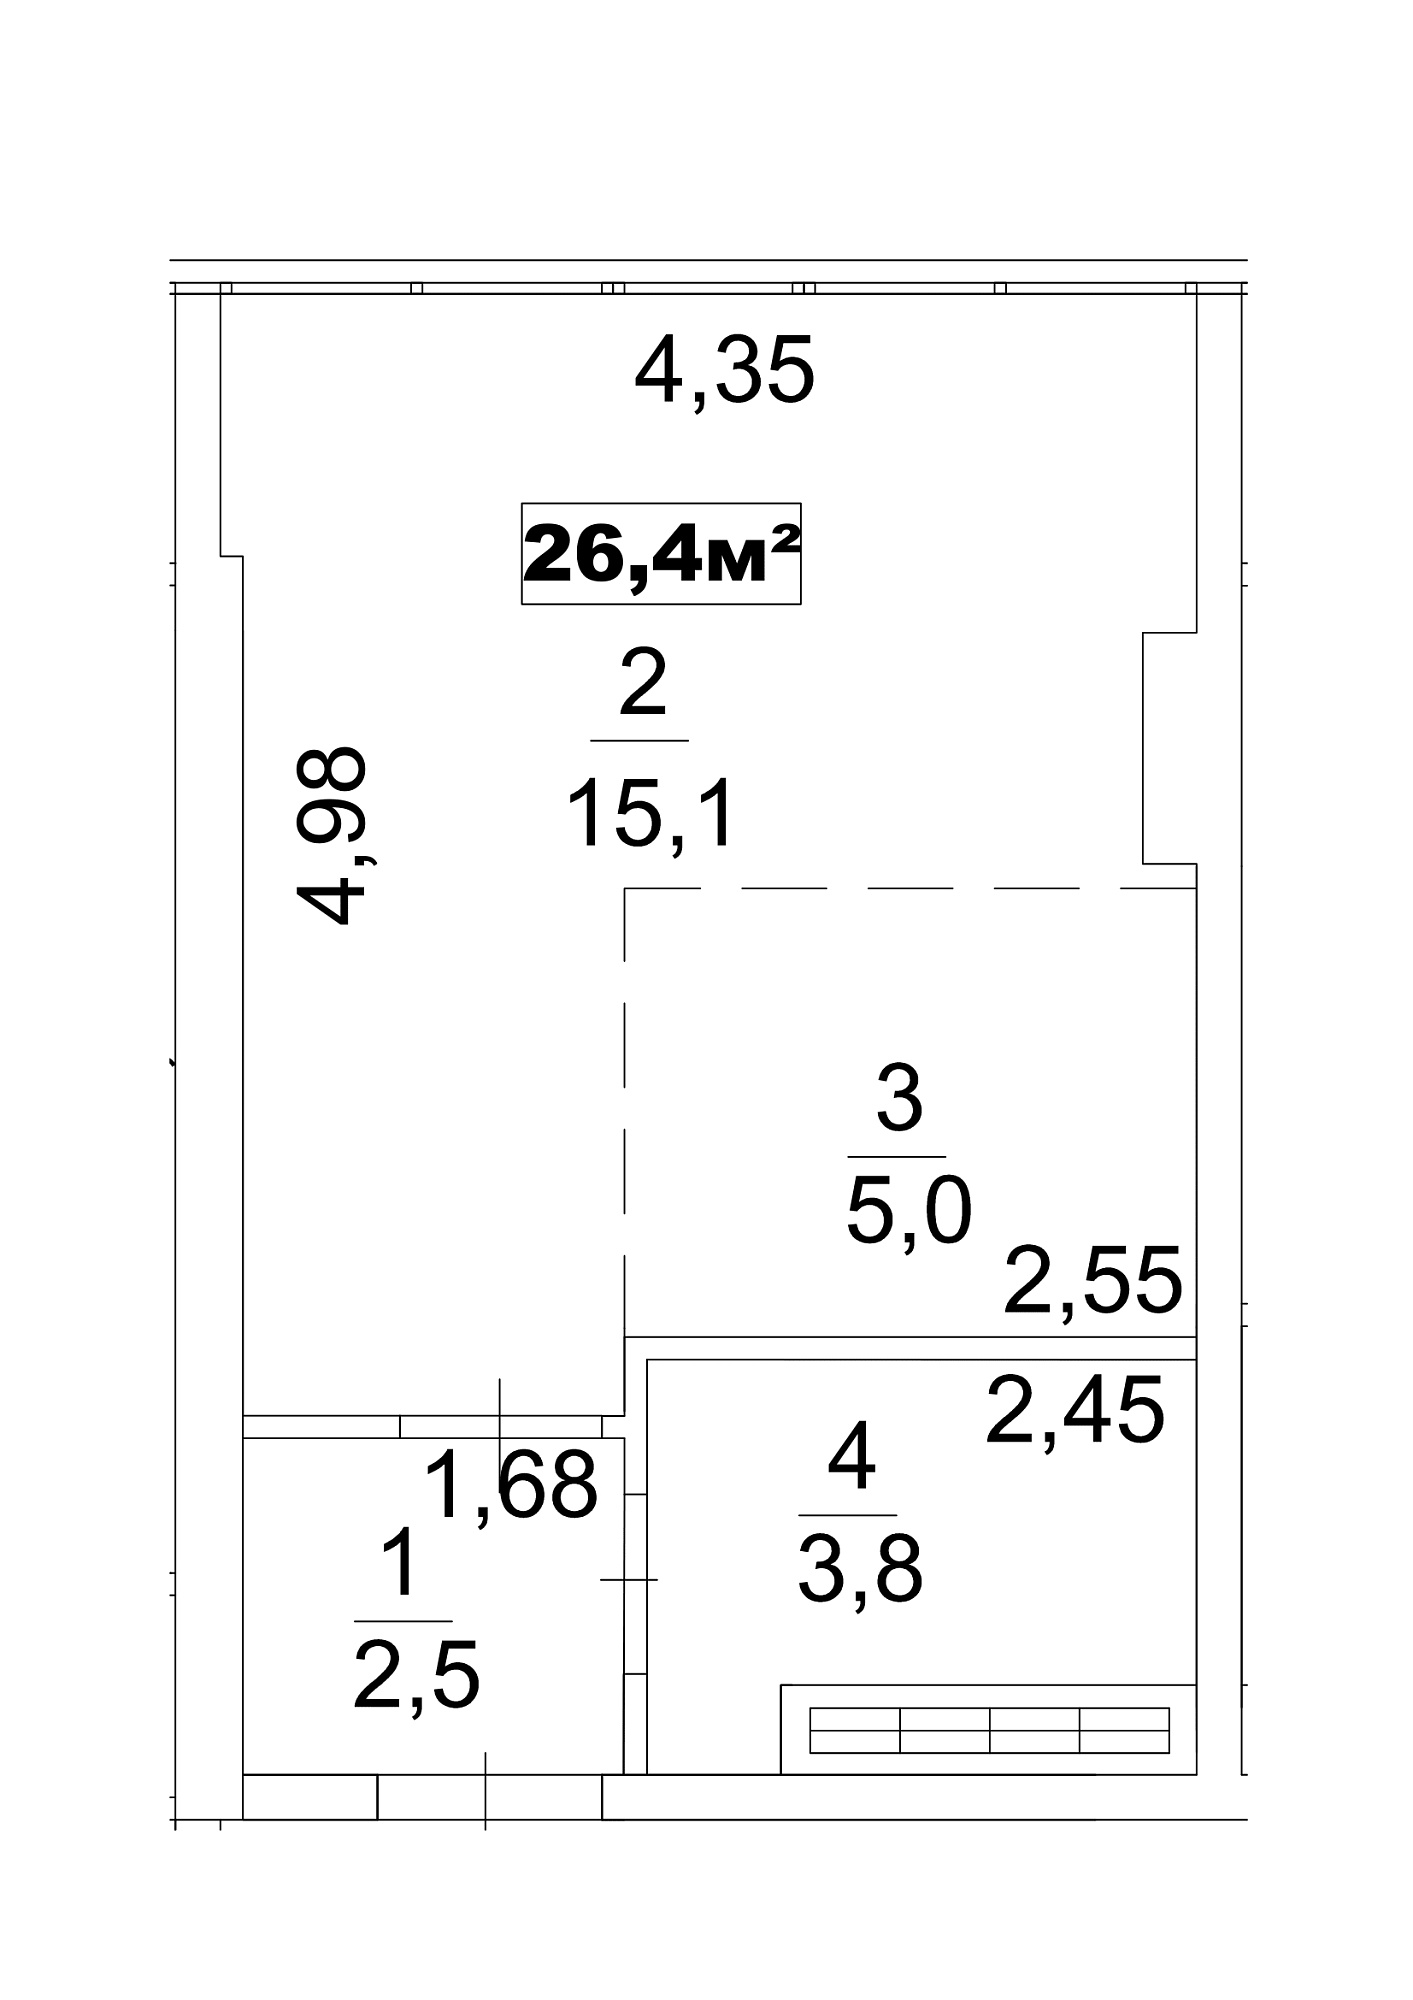 Планування Smart-квартира площею 26.4м2, AB-13-01/0003д.